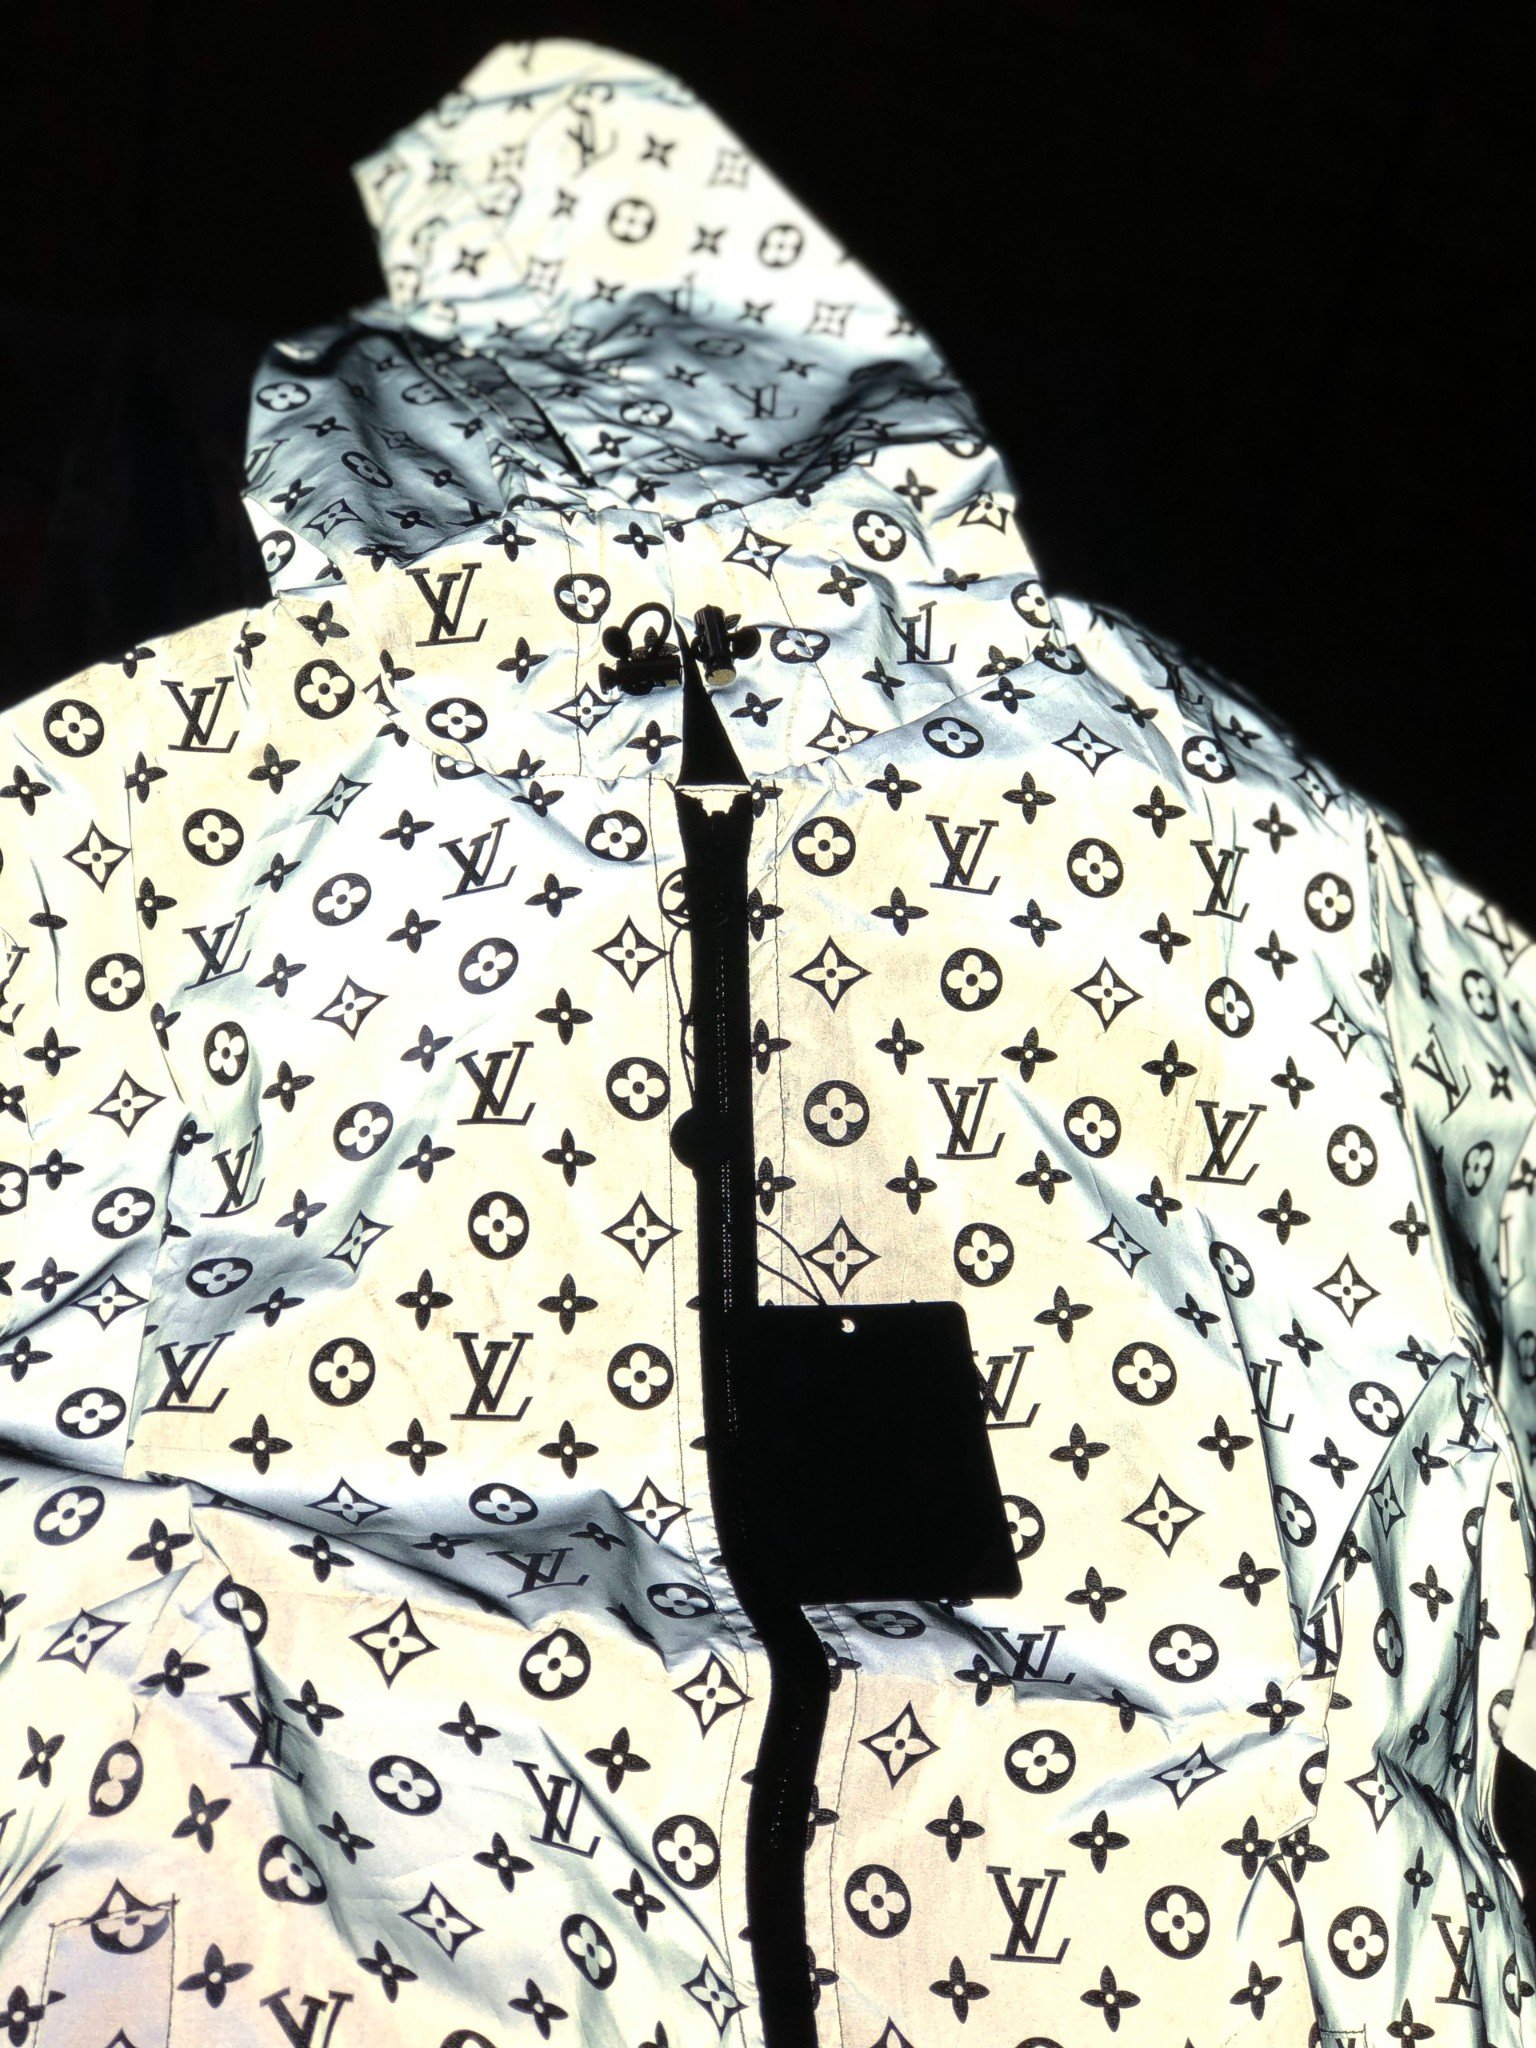 Áo thời trang Louis Vuitton siêu cấp phản quang  hot trend   khuyến mãi  giá rẻ chỉ 543750 đ  Giảm giá mỗi ngày